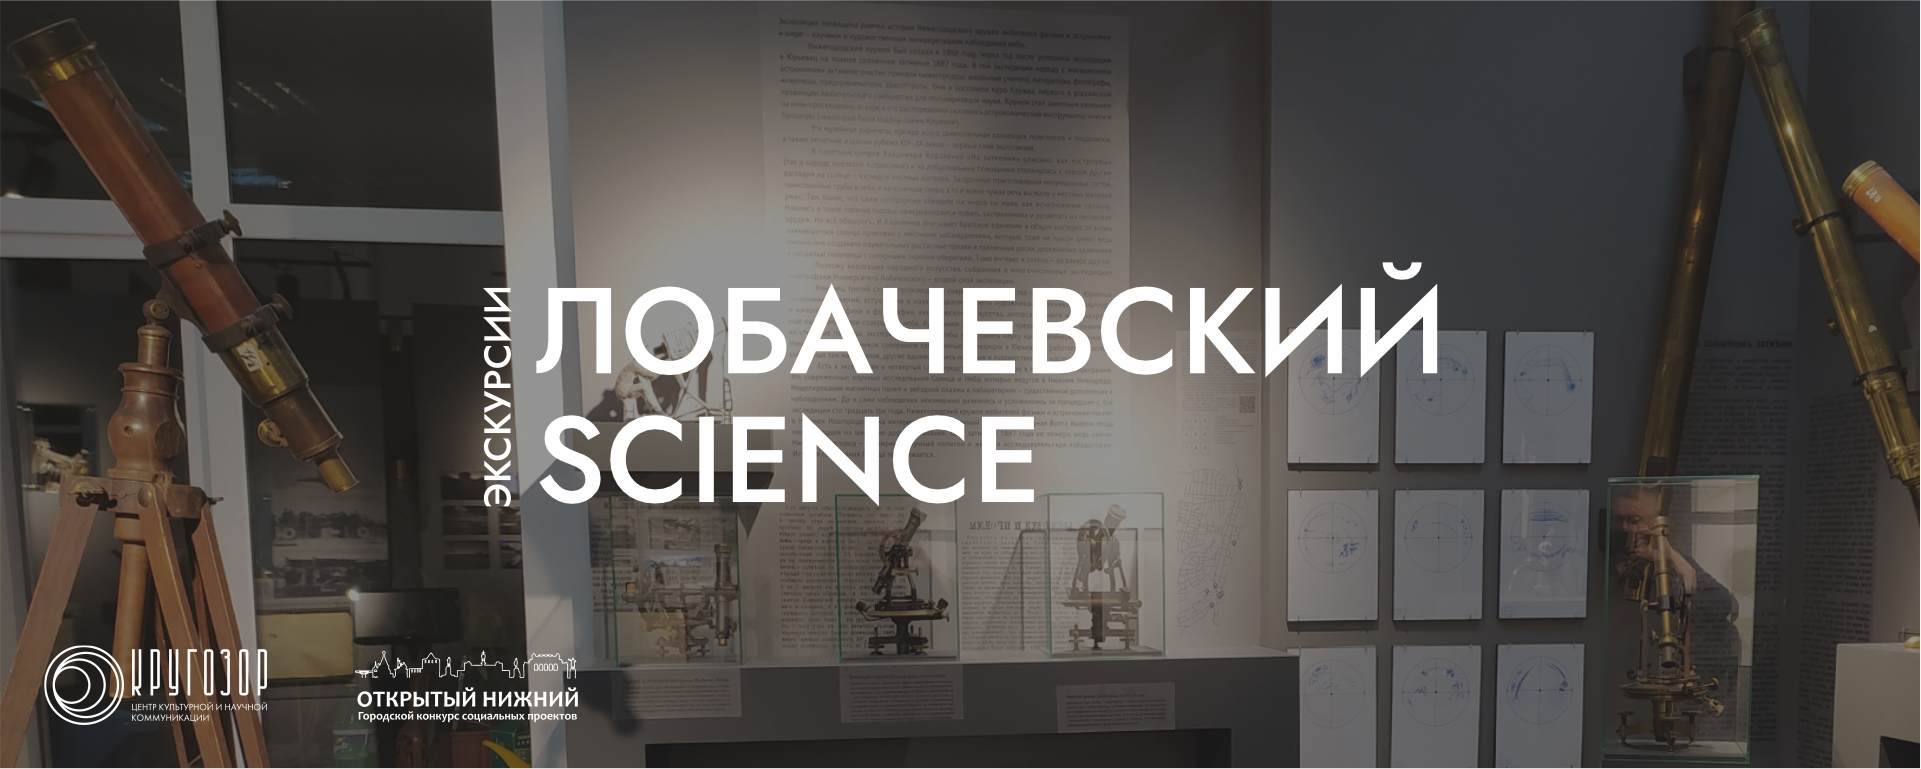 Лобачевский Science: экскурсии